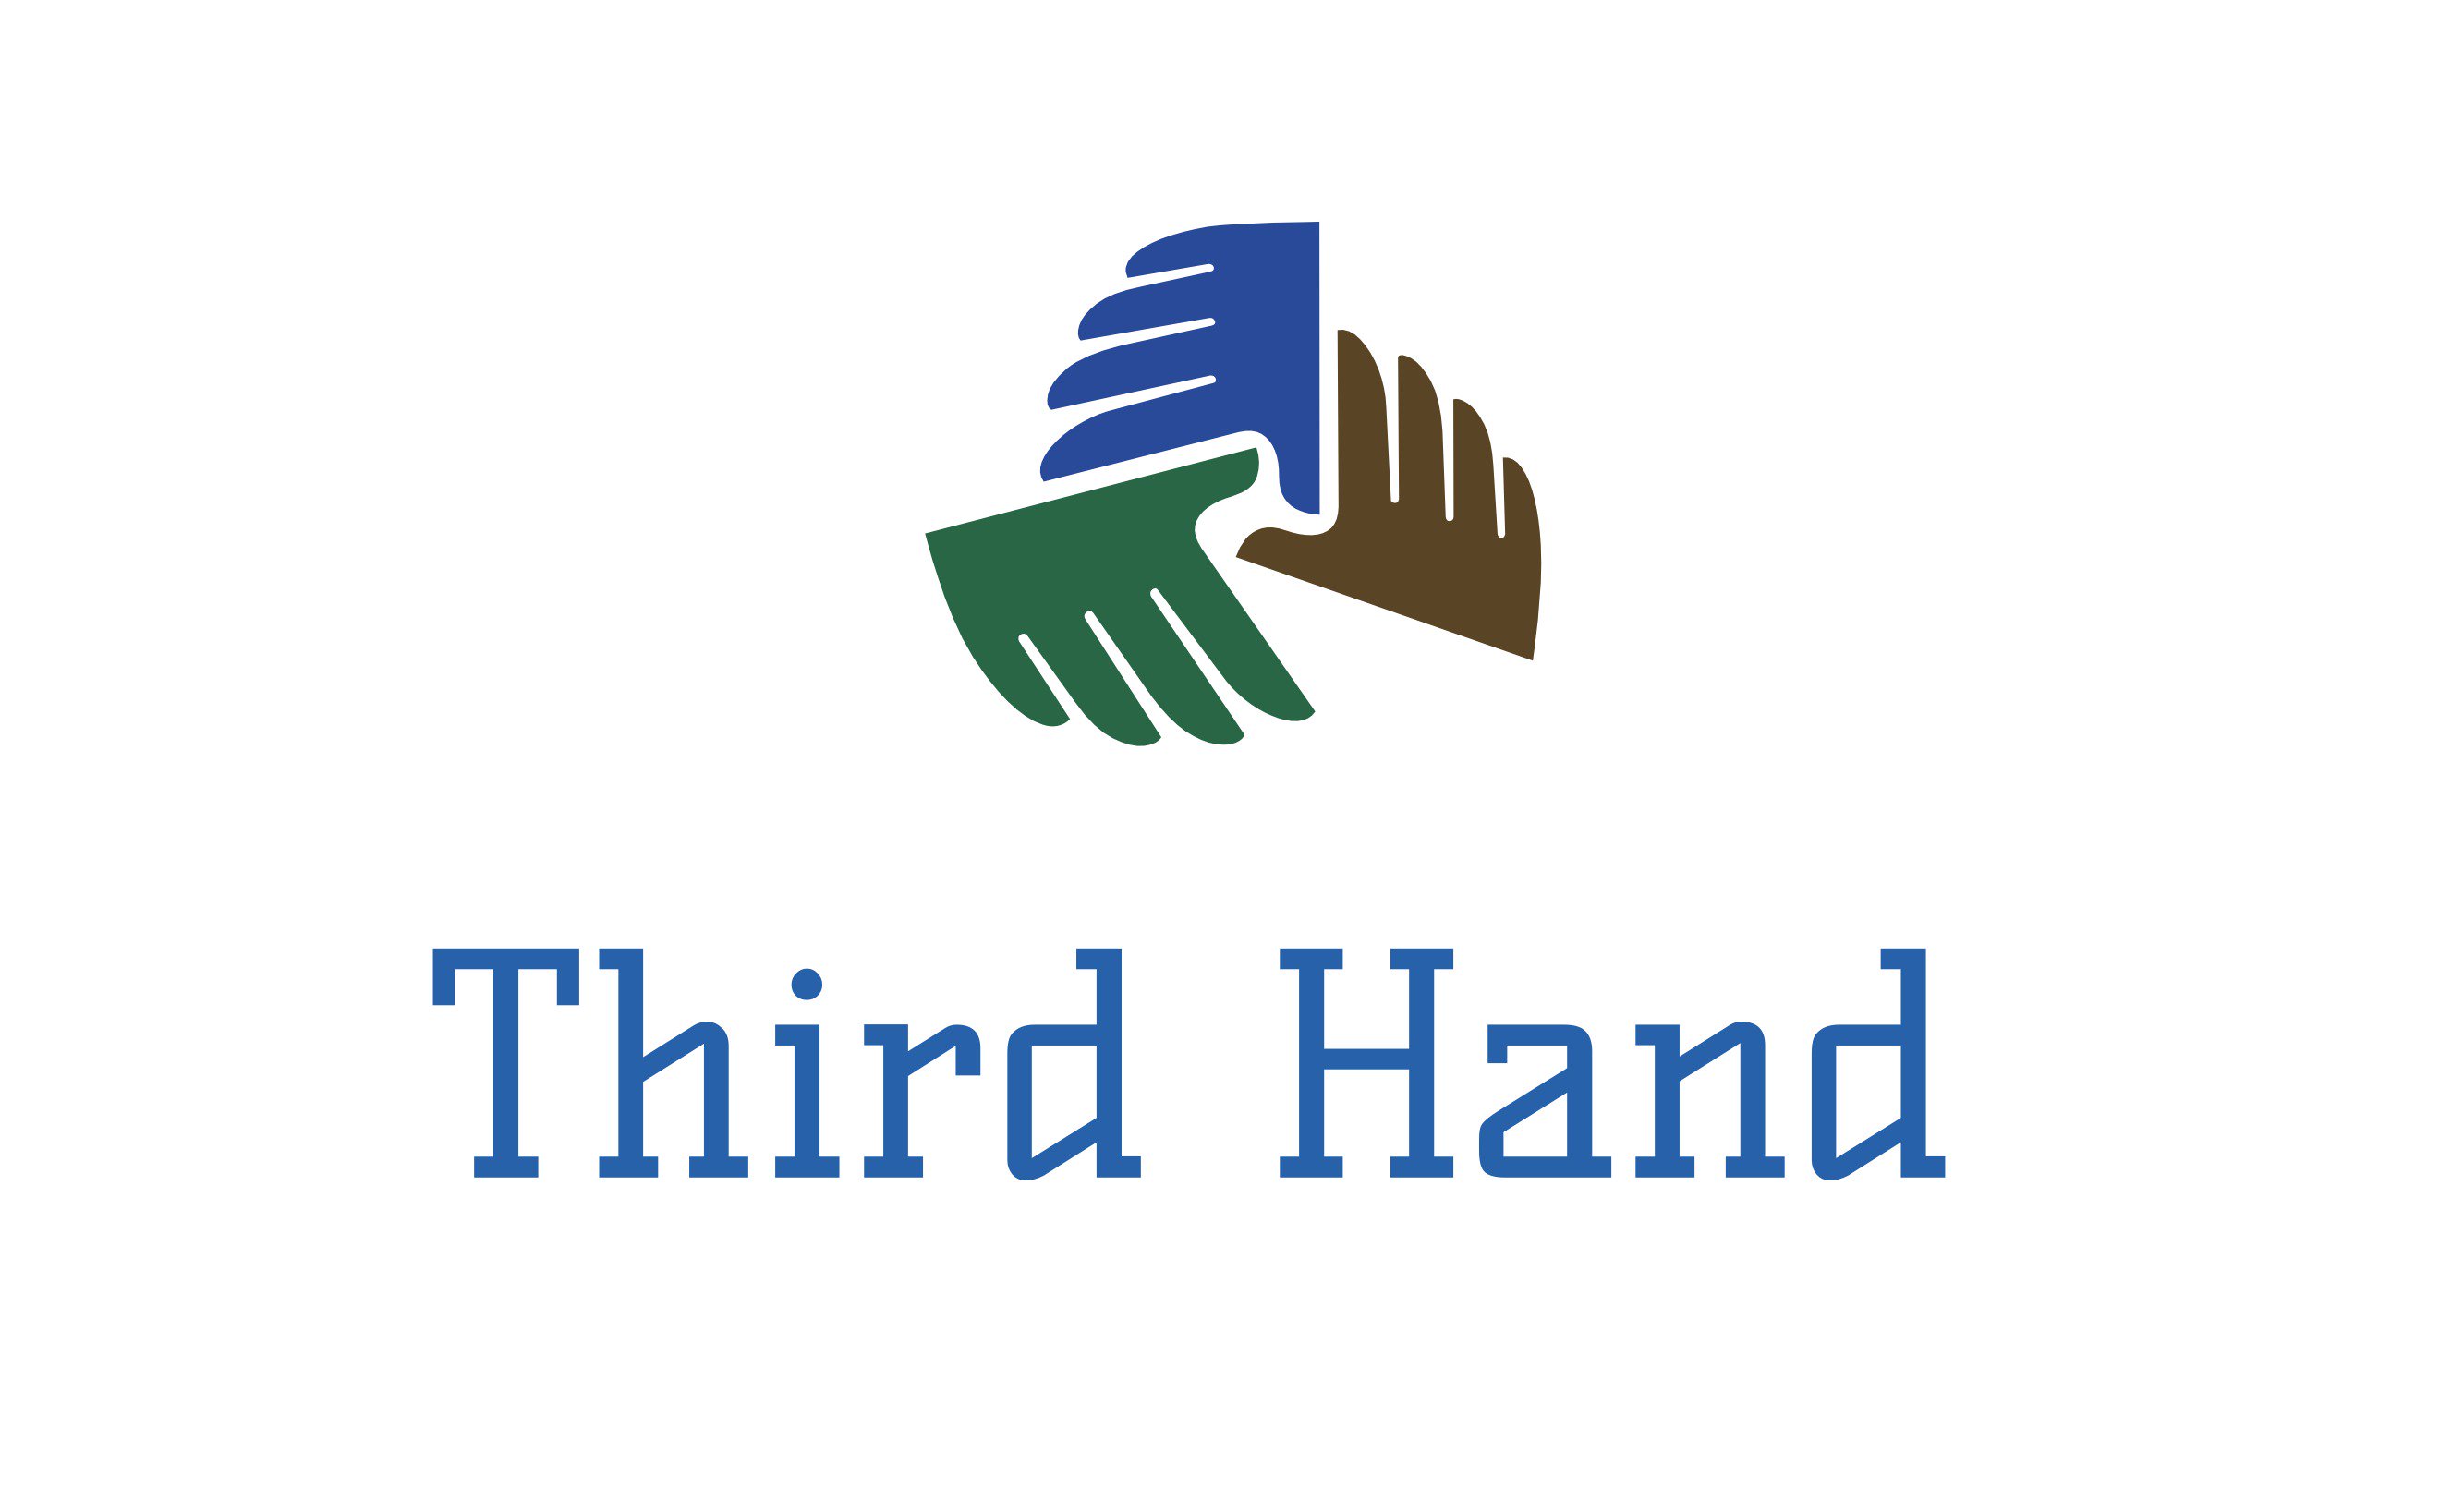 Third Hand Caretaking Inc.